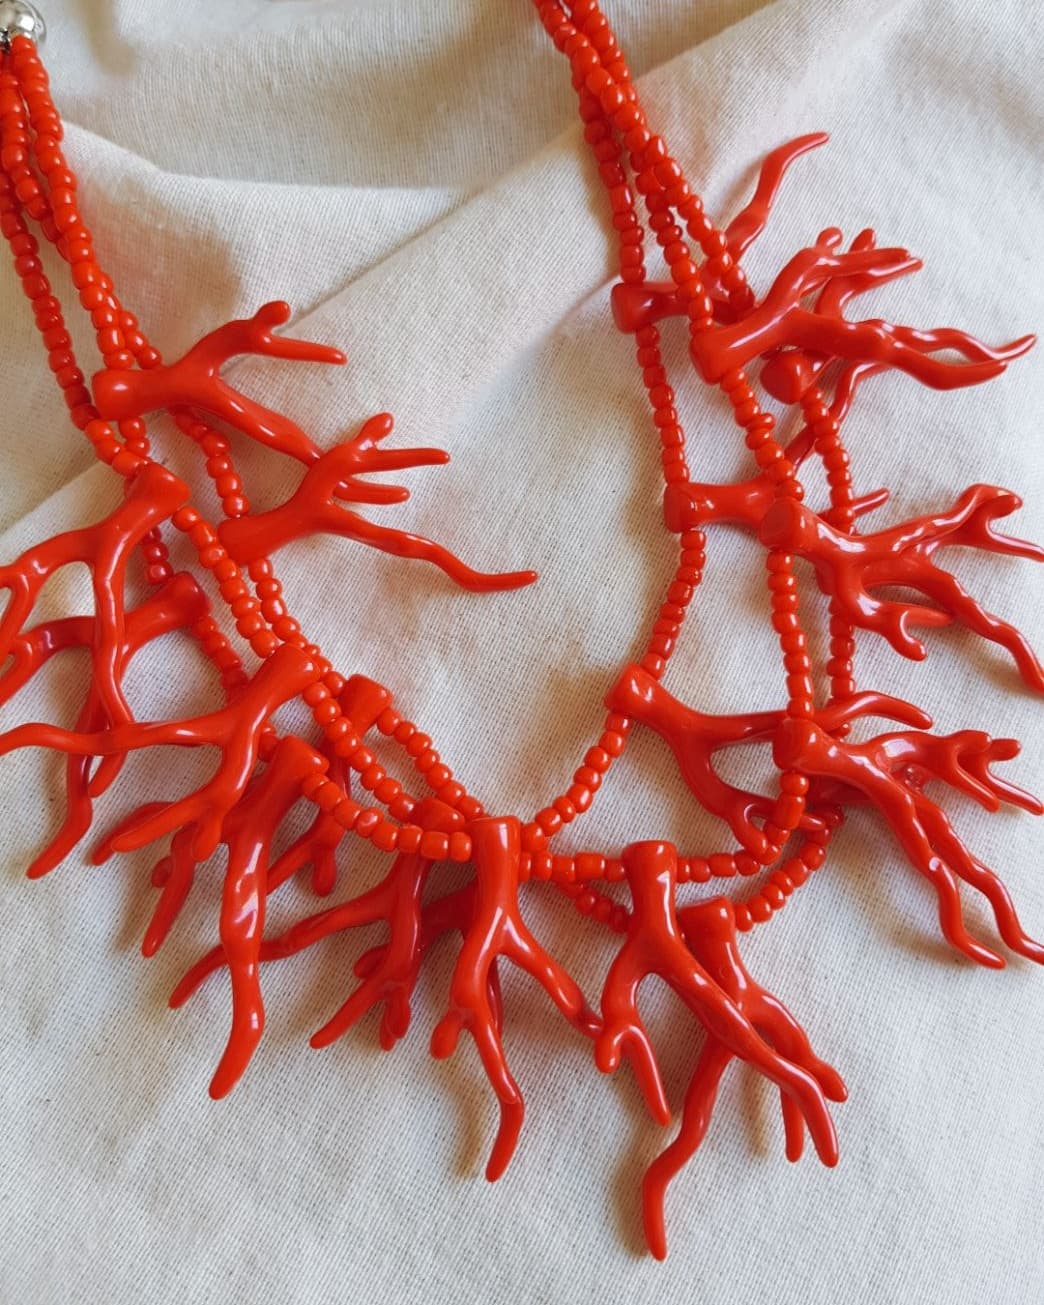 Mariscos Constitución Escabullirse Collar coral rojo | Colette Joyas y complementos